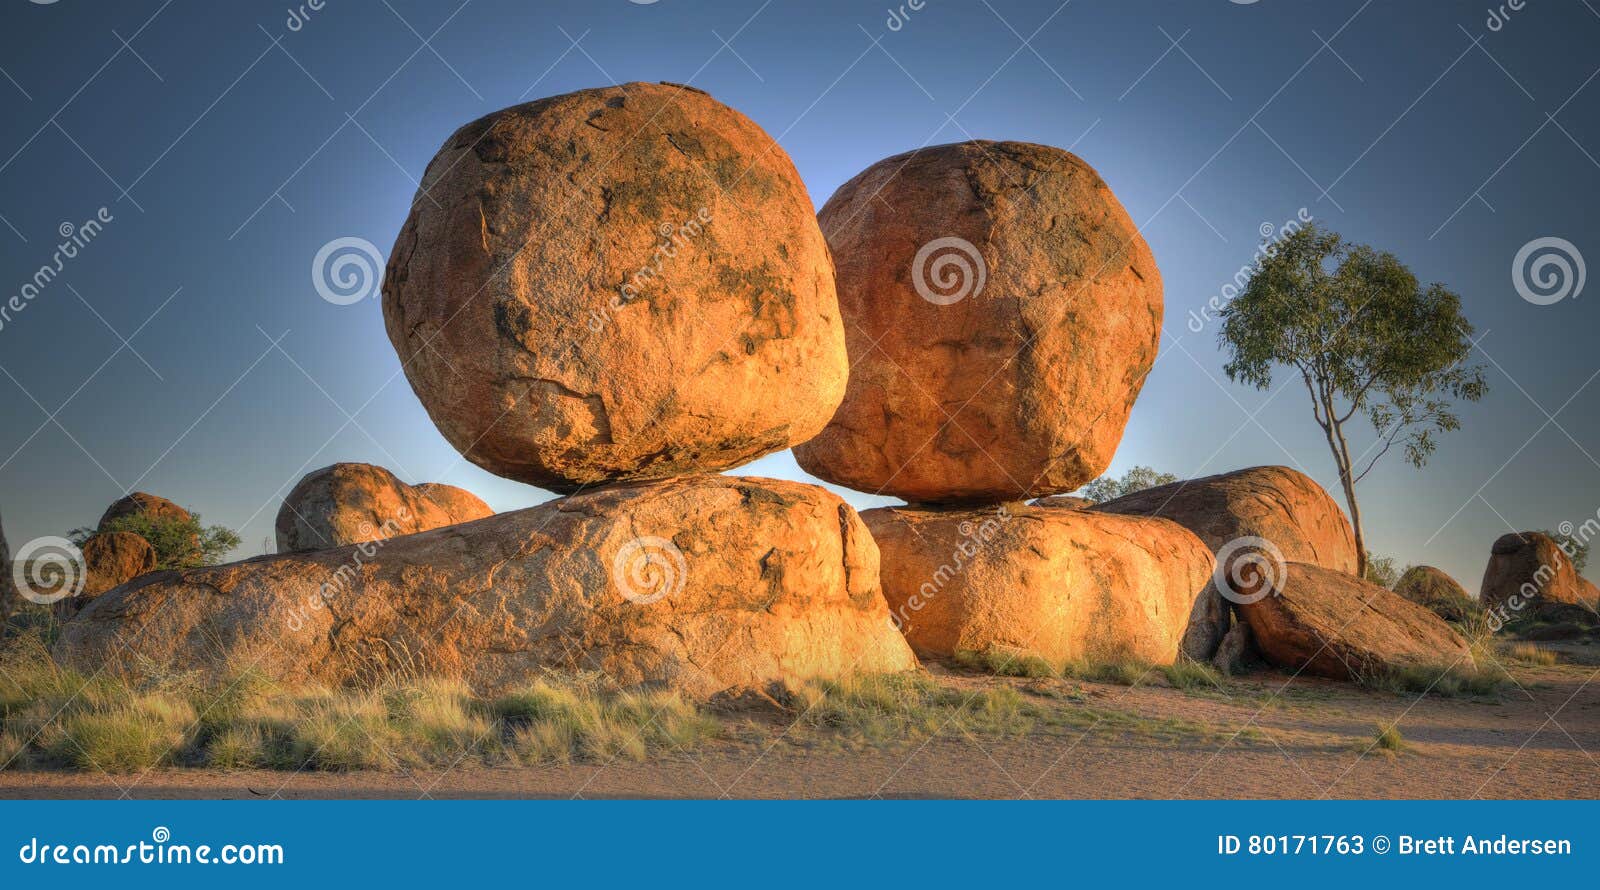 the devils marbles (karlu karlu), northern territory, australia